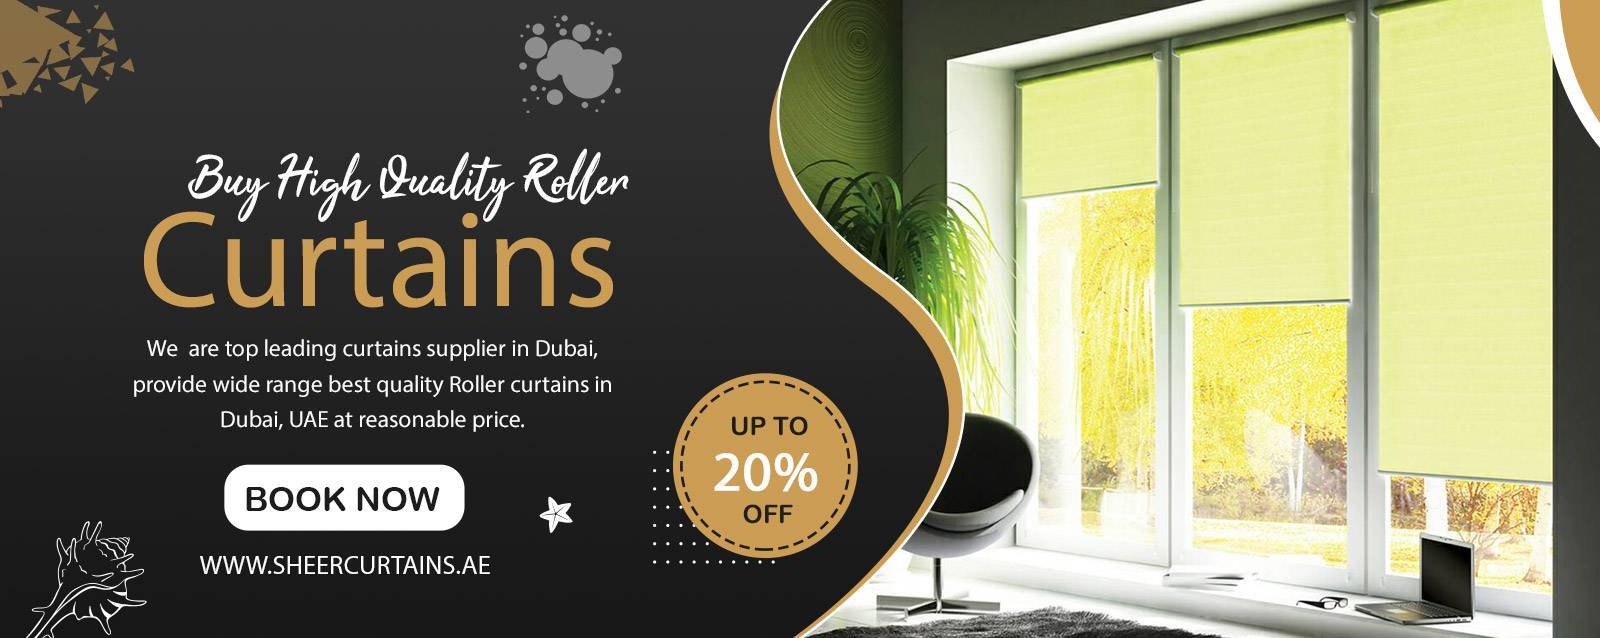 Buy Roller Curtains Dubai